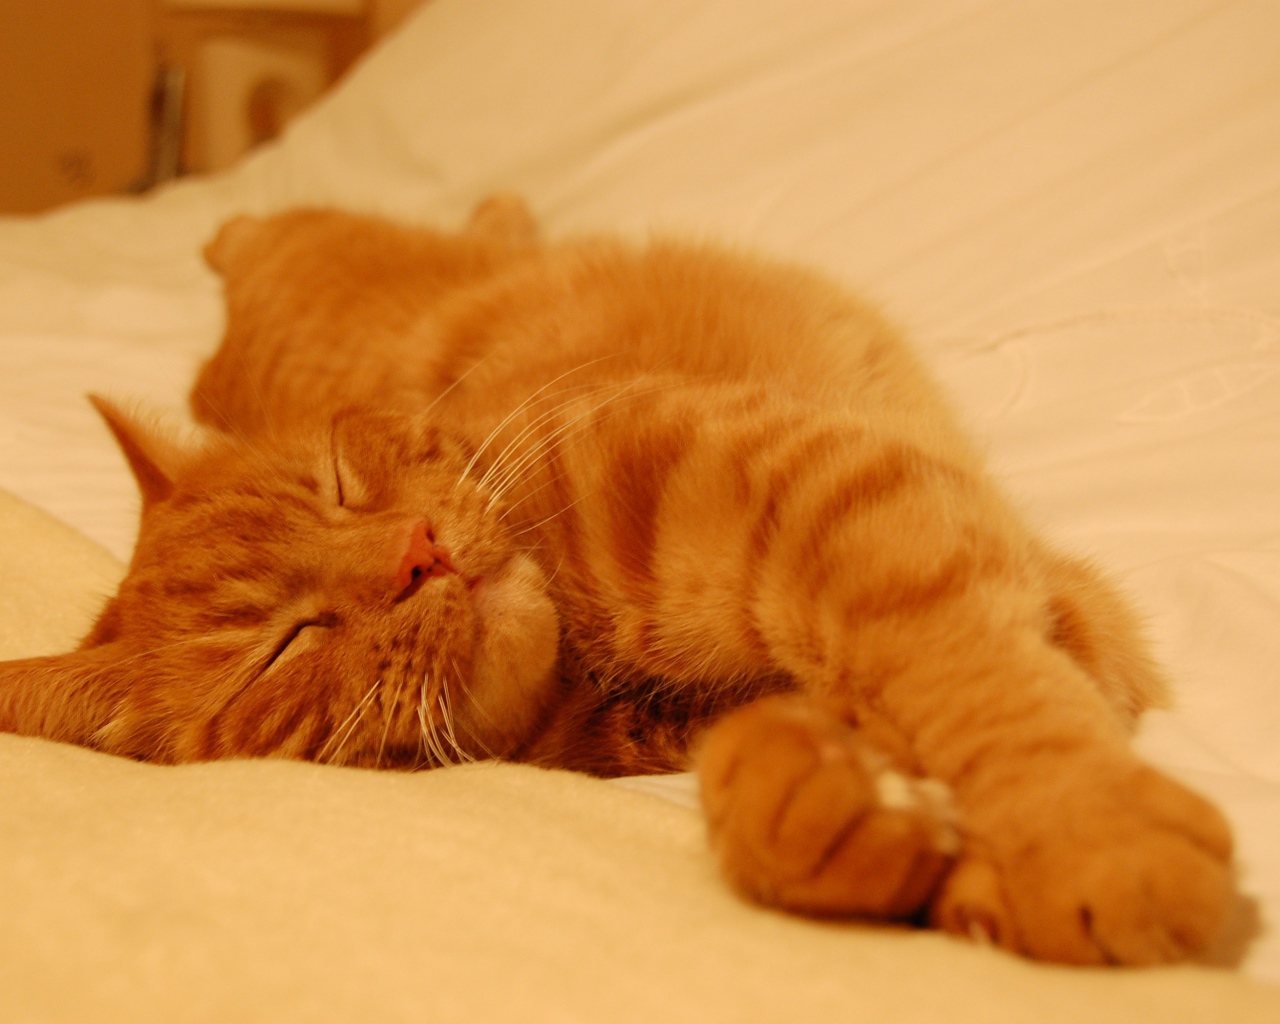 Рыжий кот сладко спит на простыне